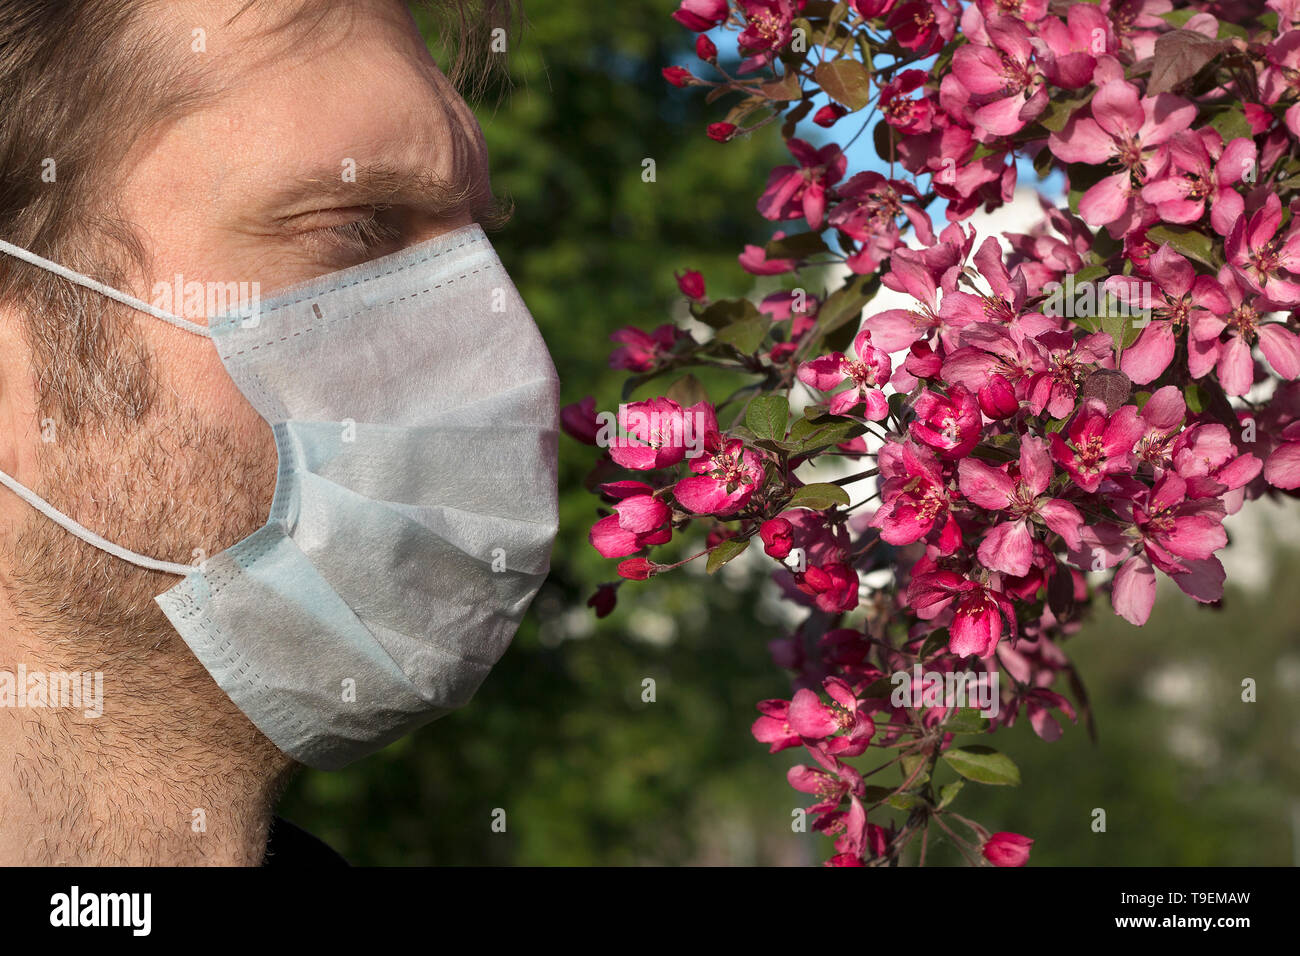 Portrait de l'homme avec respirateur médical sur son visage, les fleurs des pommiers. Manque d'oxygène, la faiblesse de l'immunité, mauvaise écologie Banque D'Images